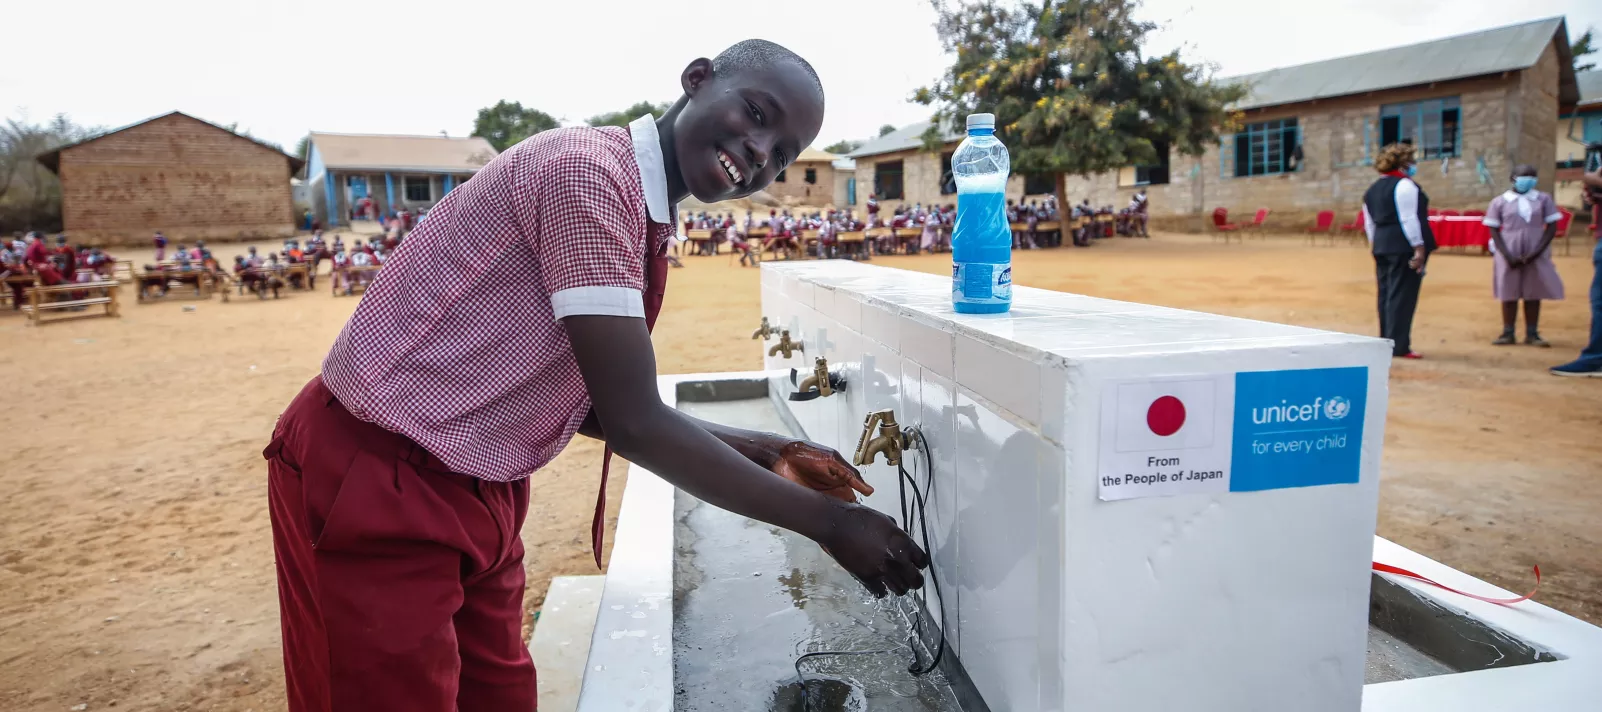 日本政府の支援でケニアの小学校に設置された手洗い場